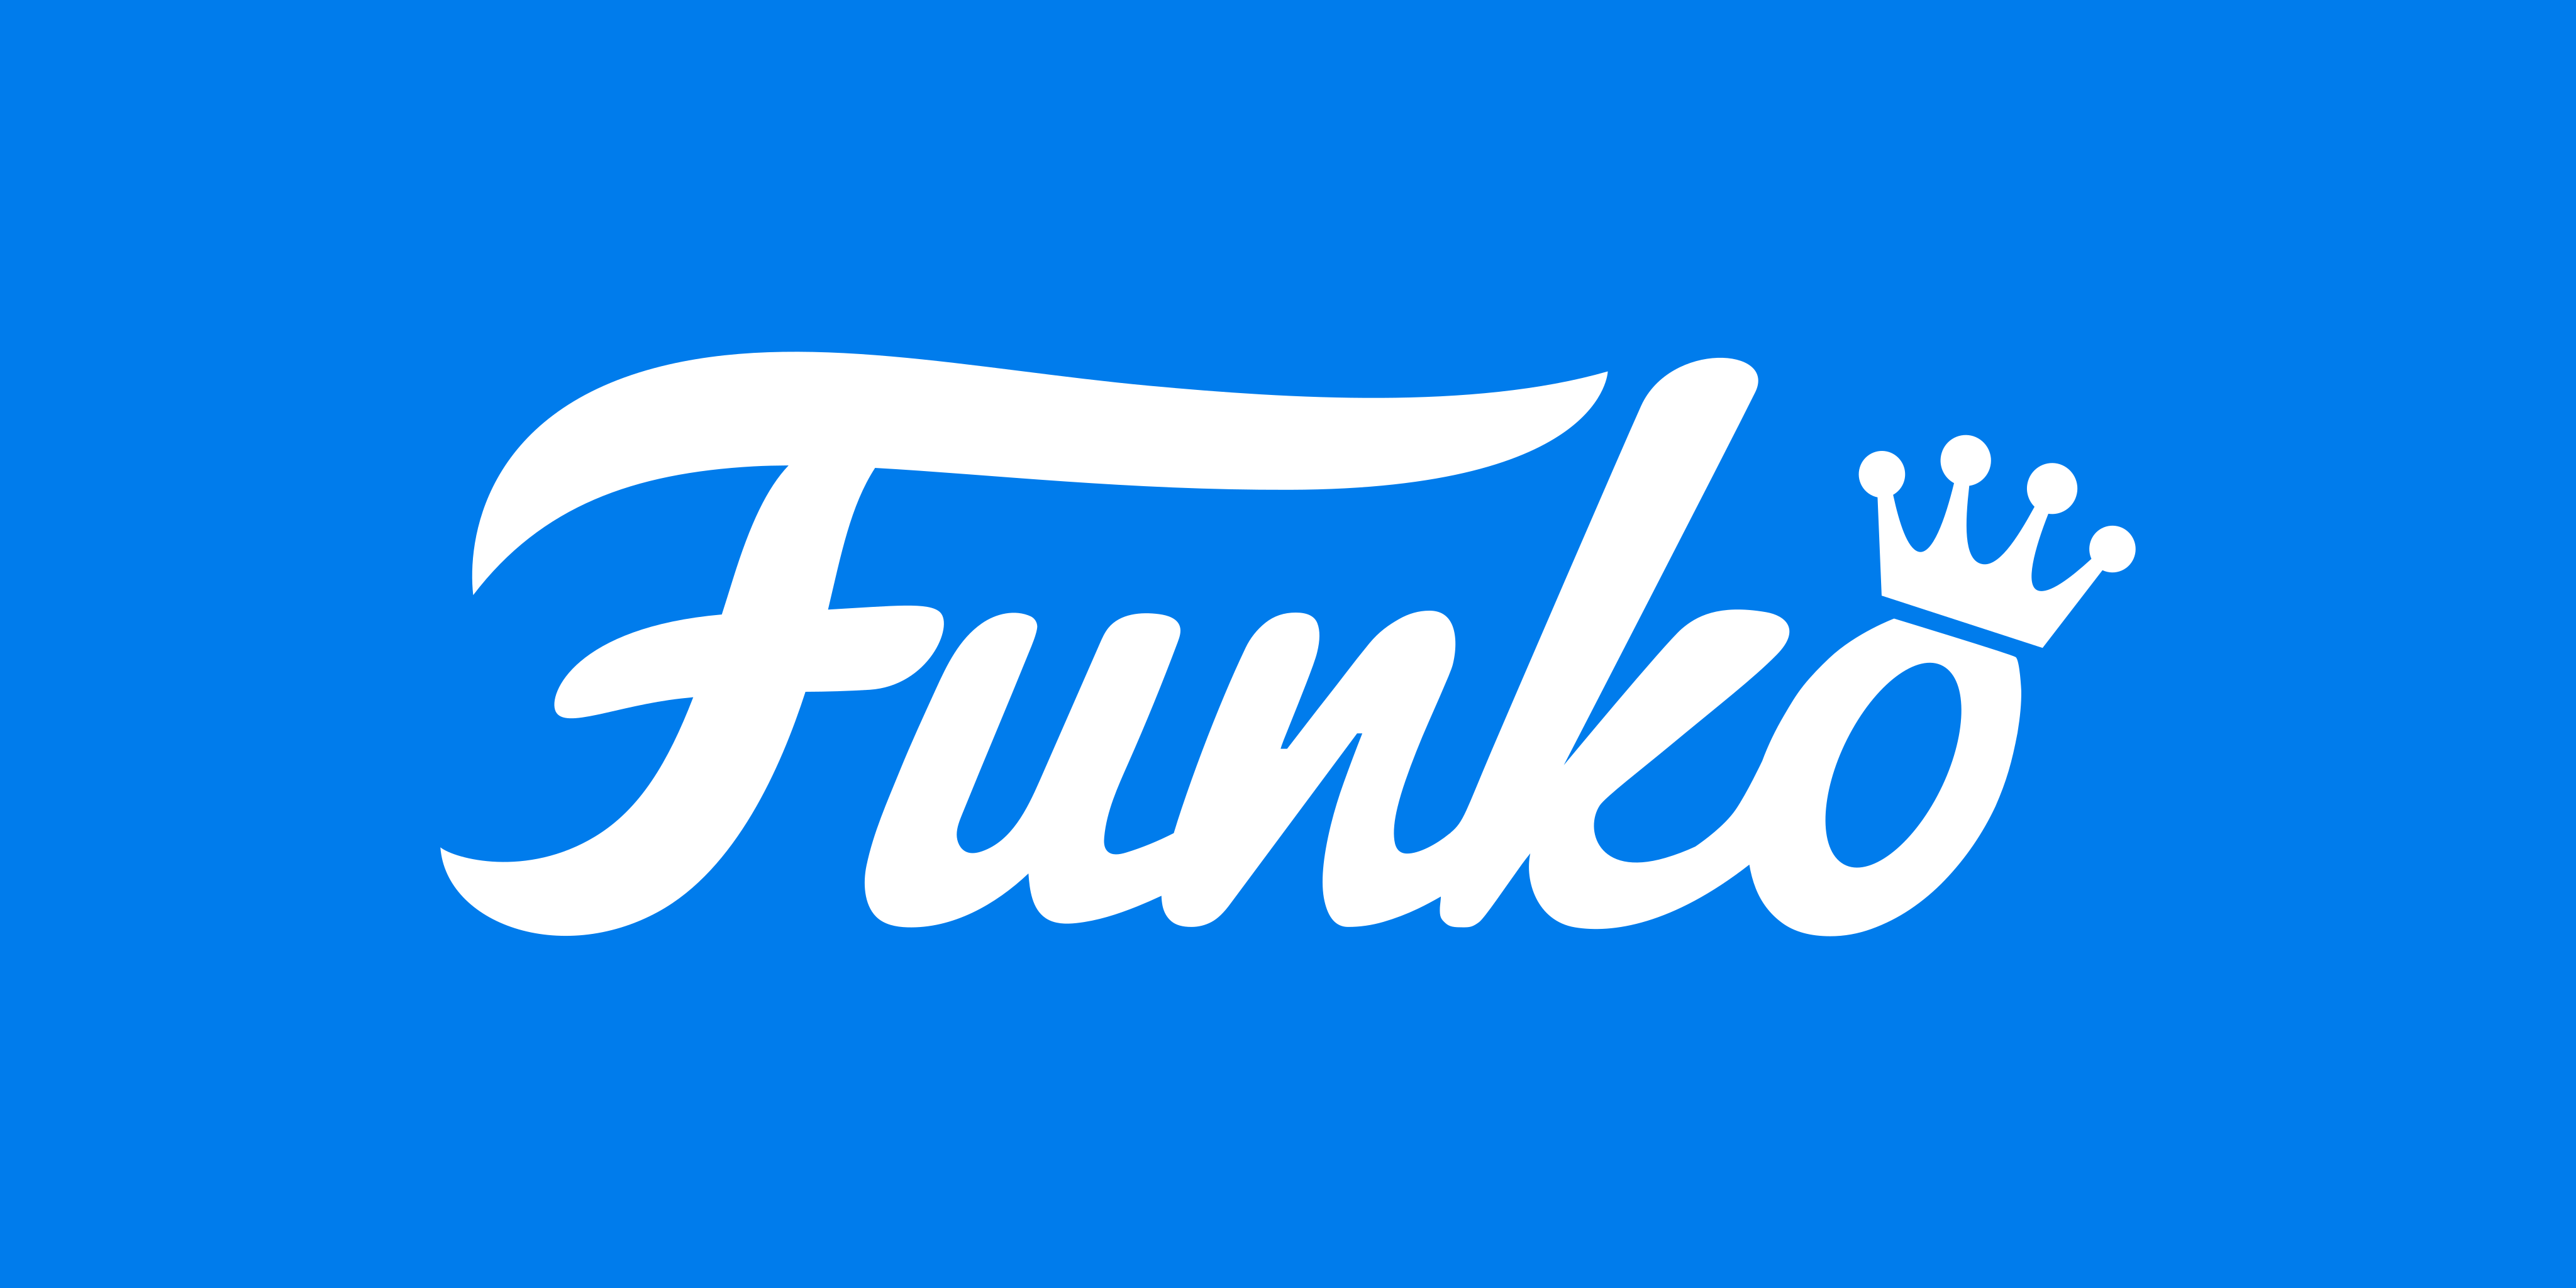 Използва се за показване на логото на Funko